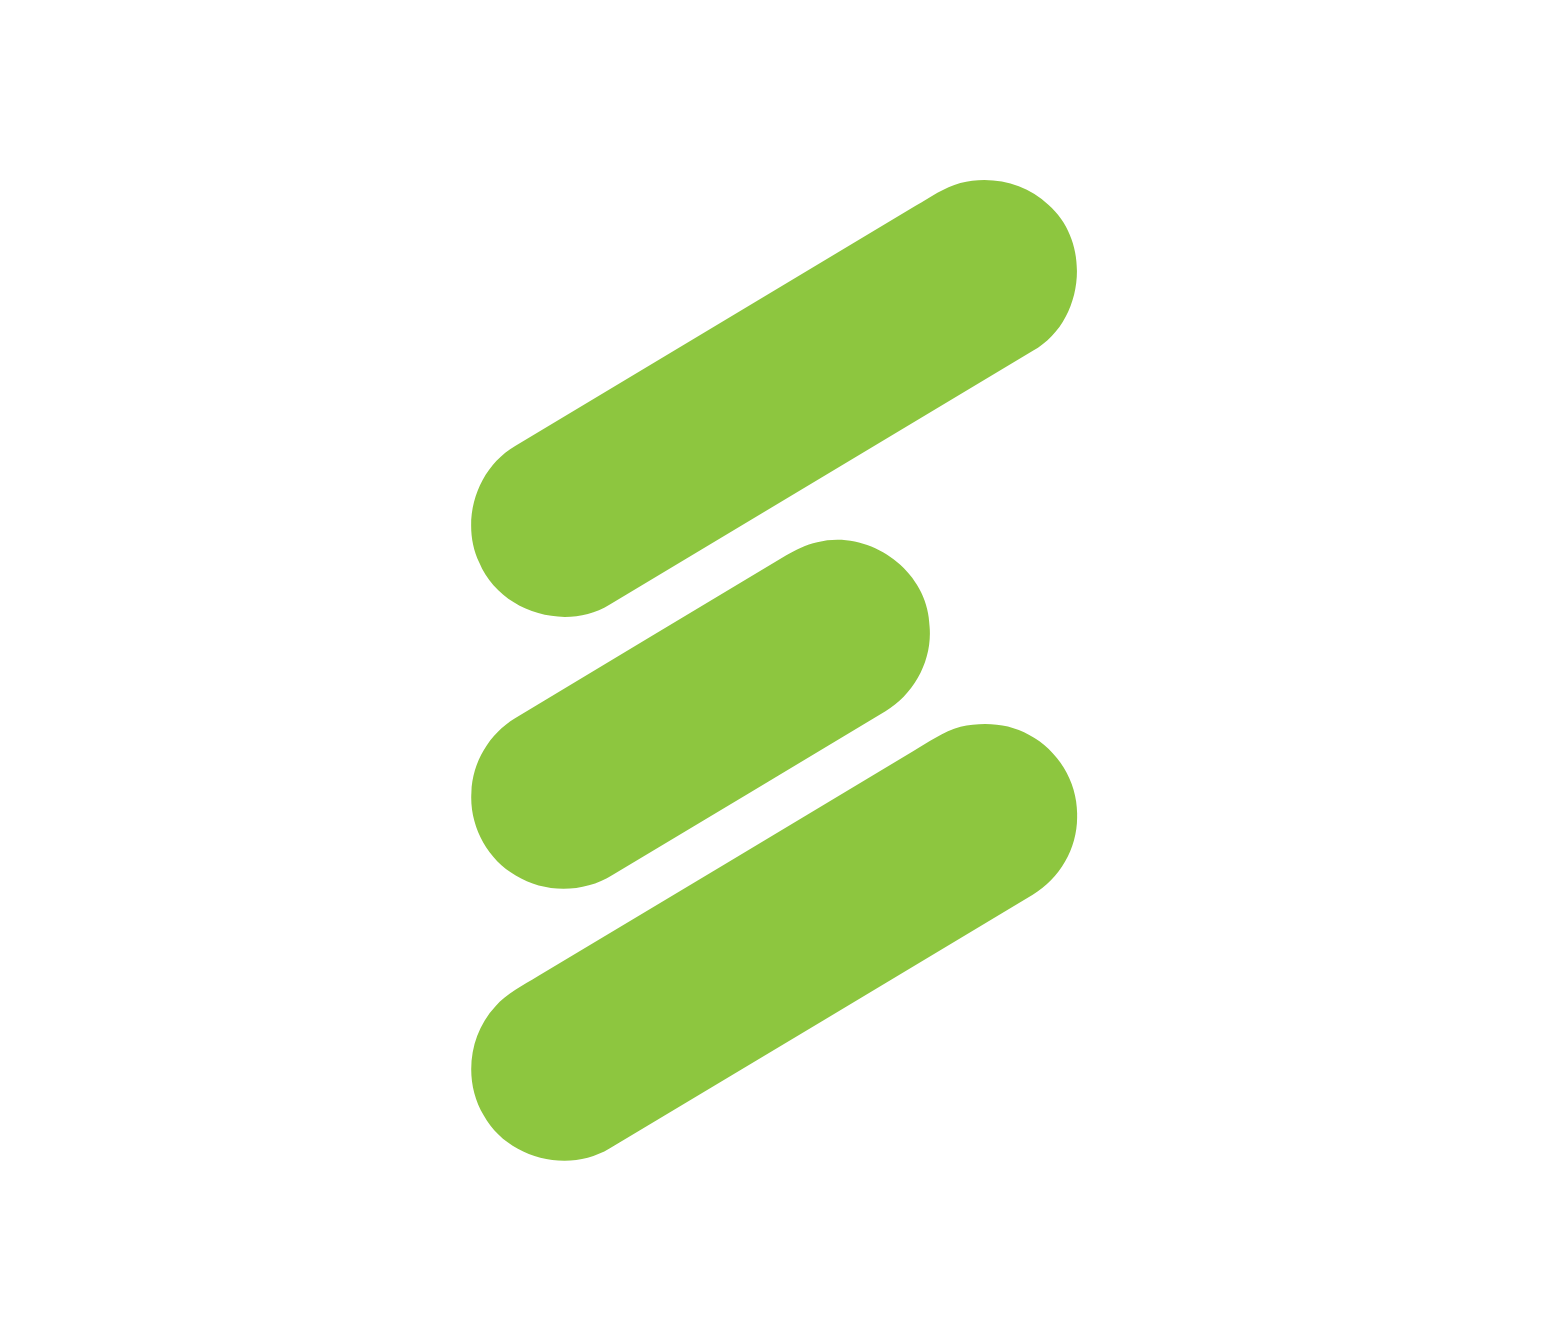 Eneti logo for dark backgrounds (transparent PNG)